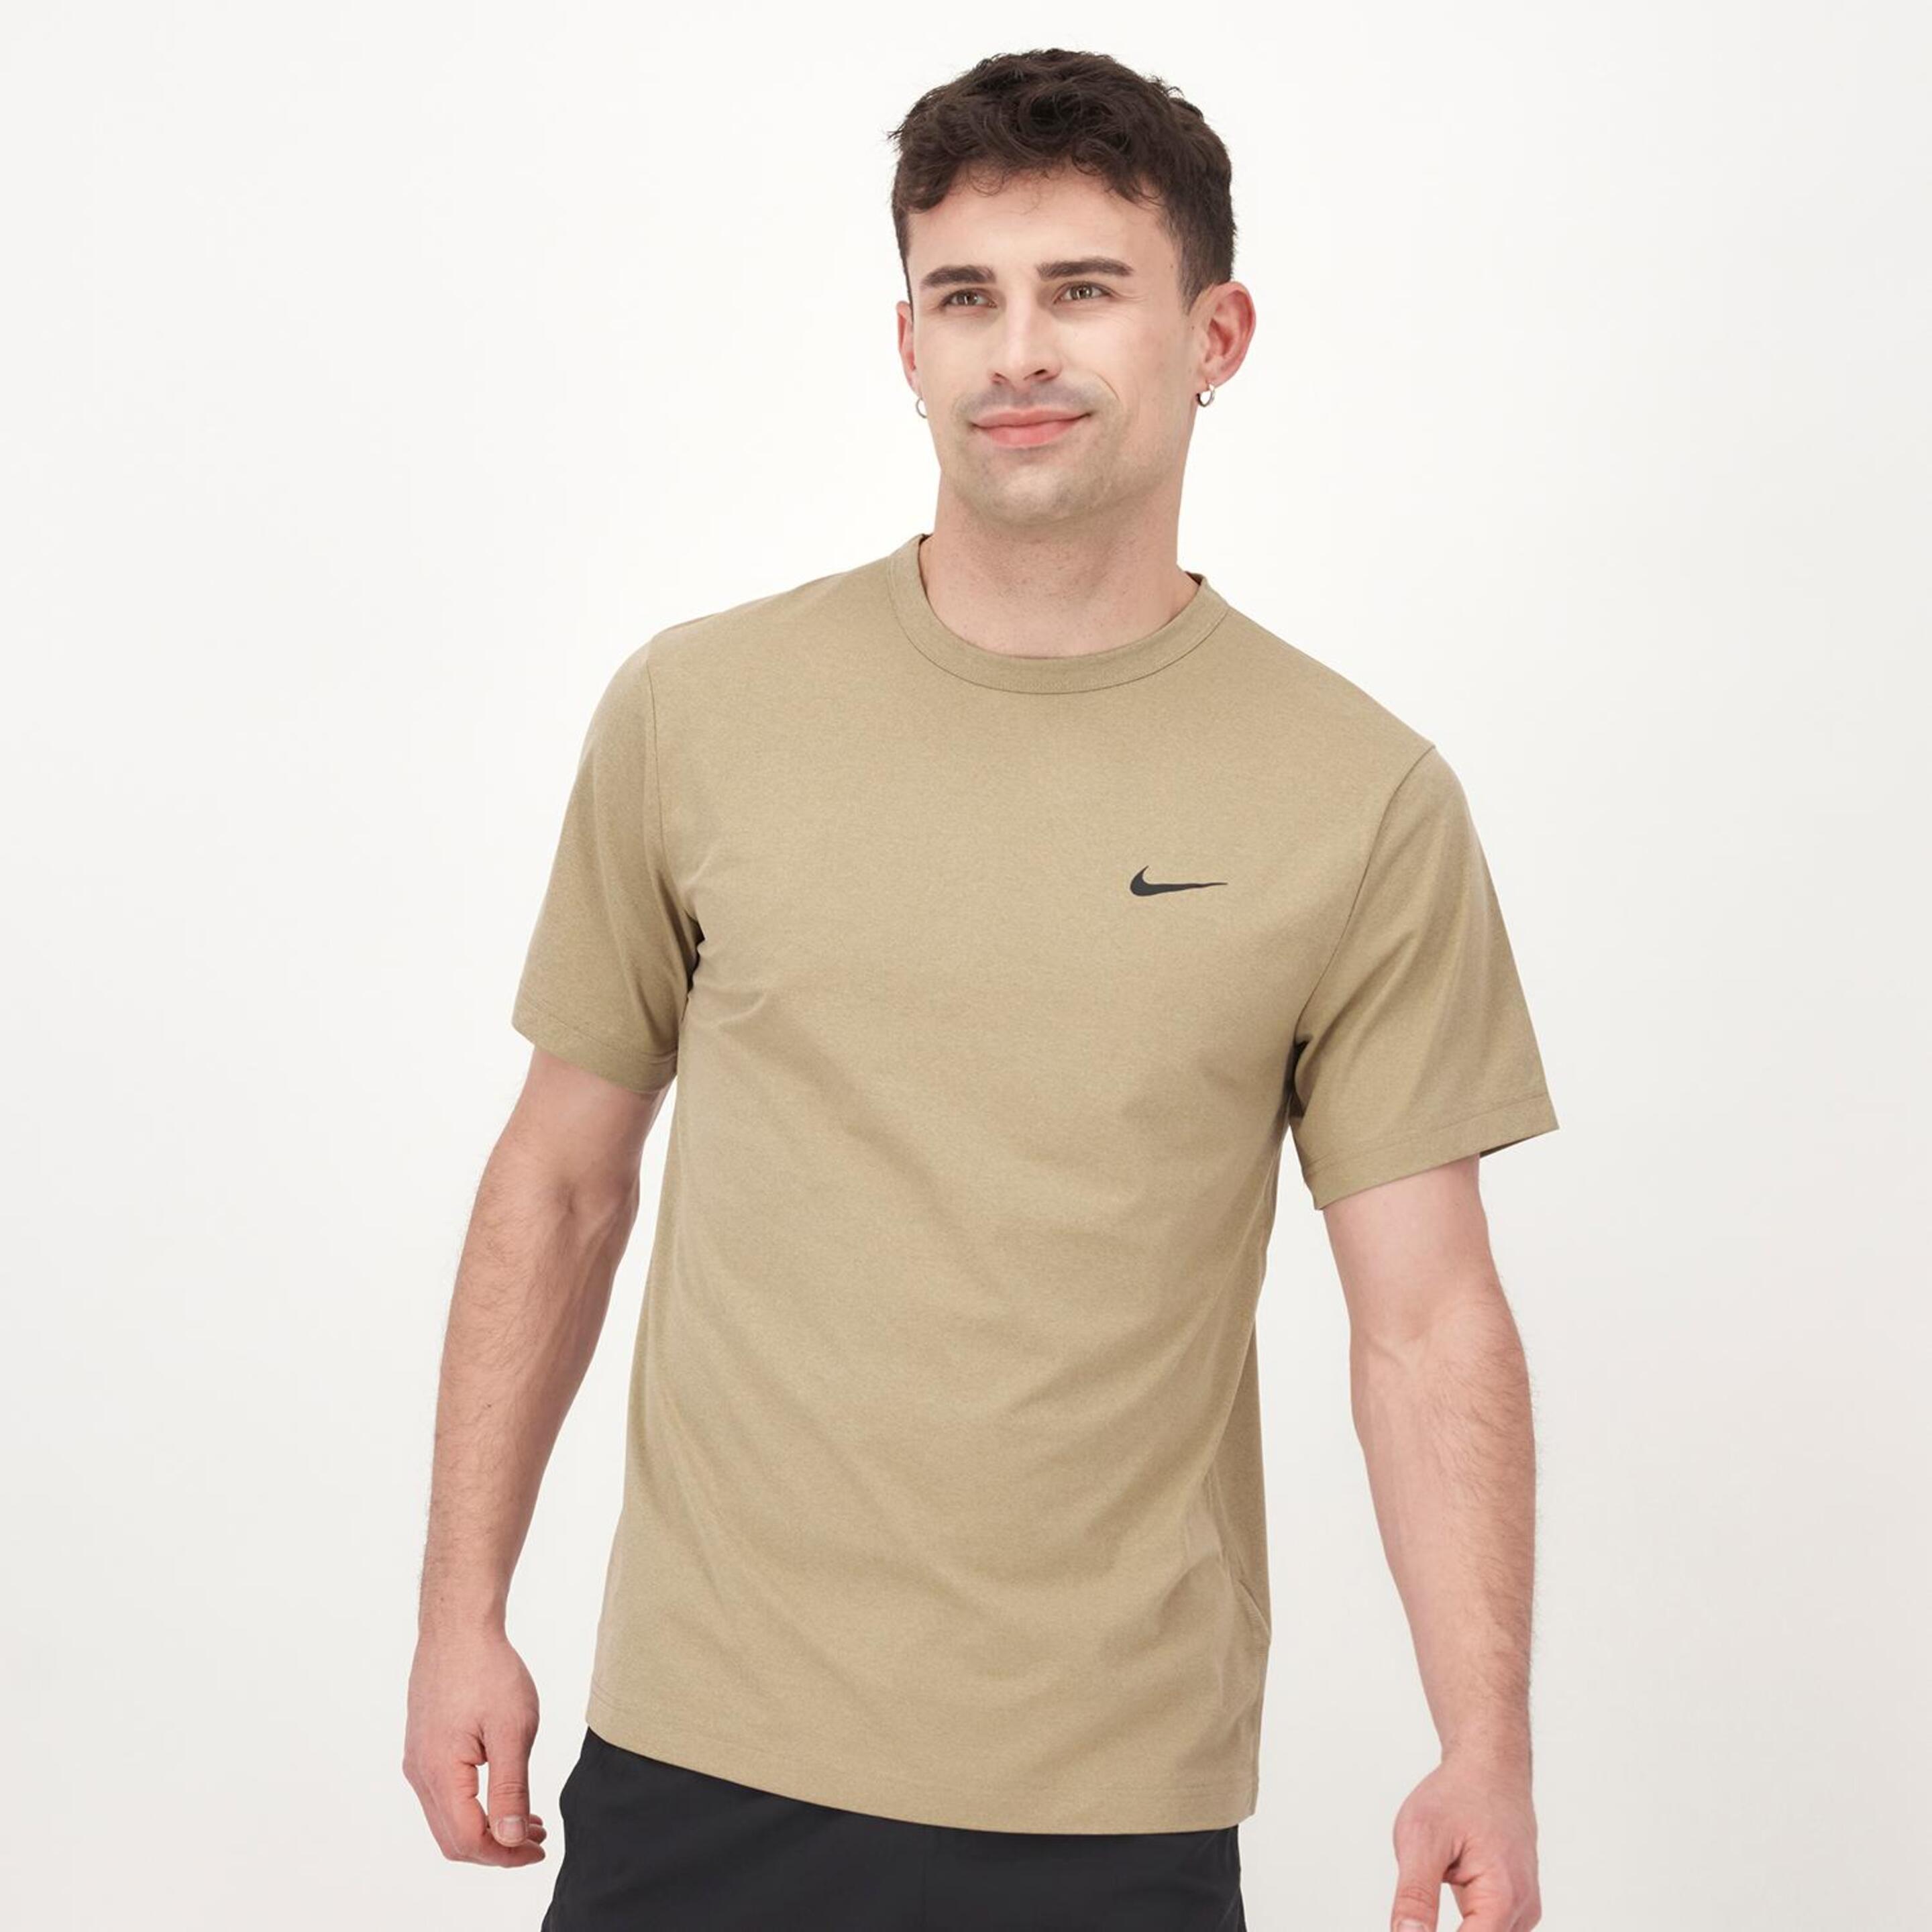 T-shirt Nike - marron - T-shirt Homem